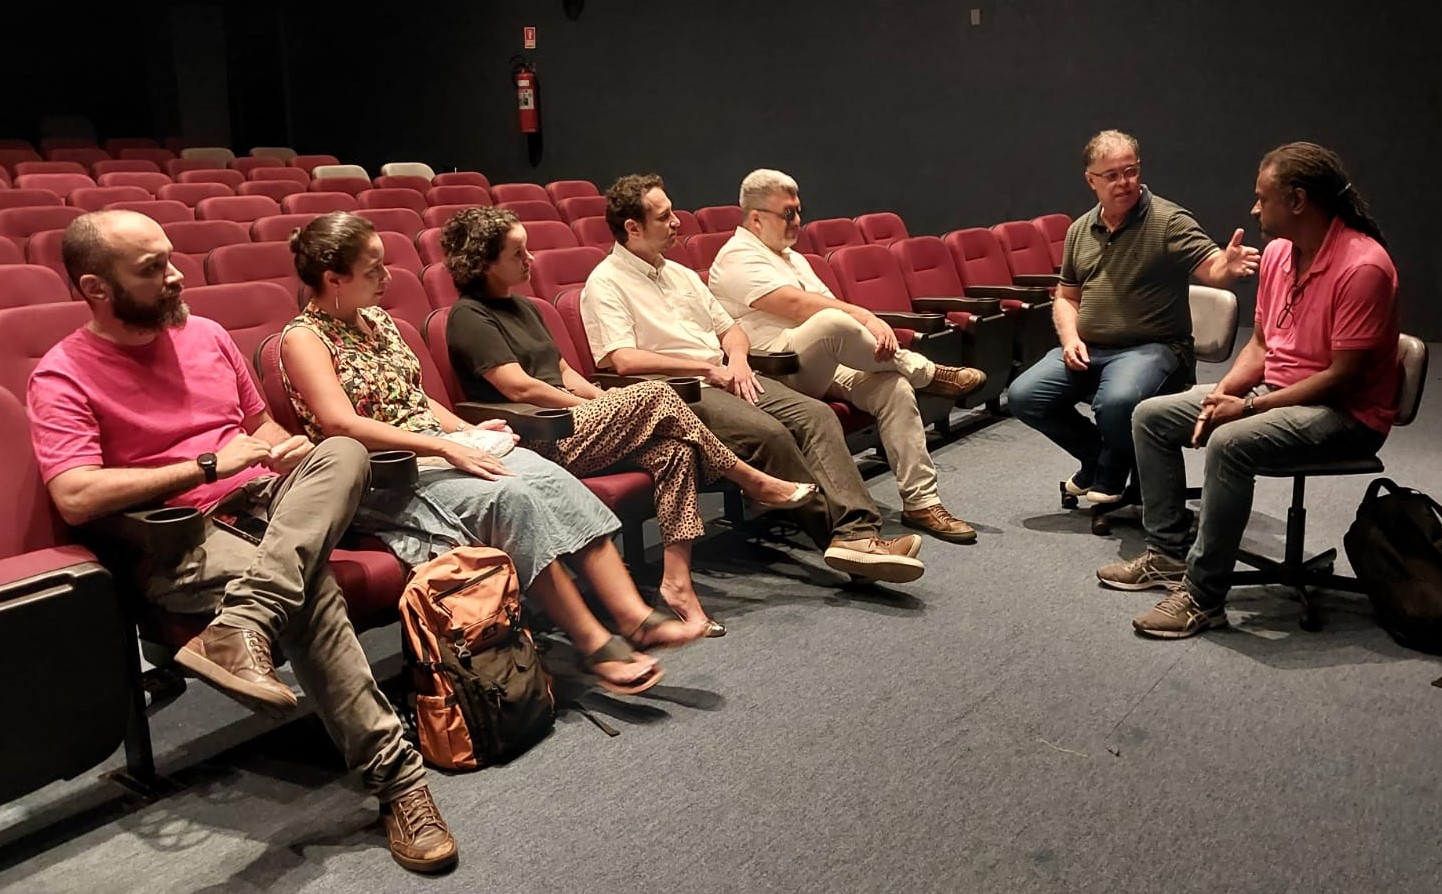 Foto da reunião, realizada no Cine Metrópolis, com todos os participantes sentados nas cadeiras do cinema